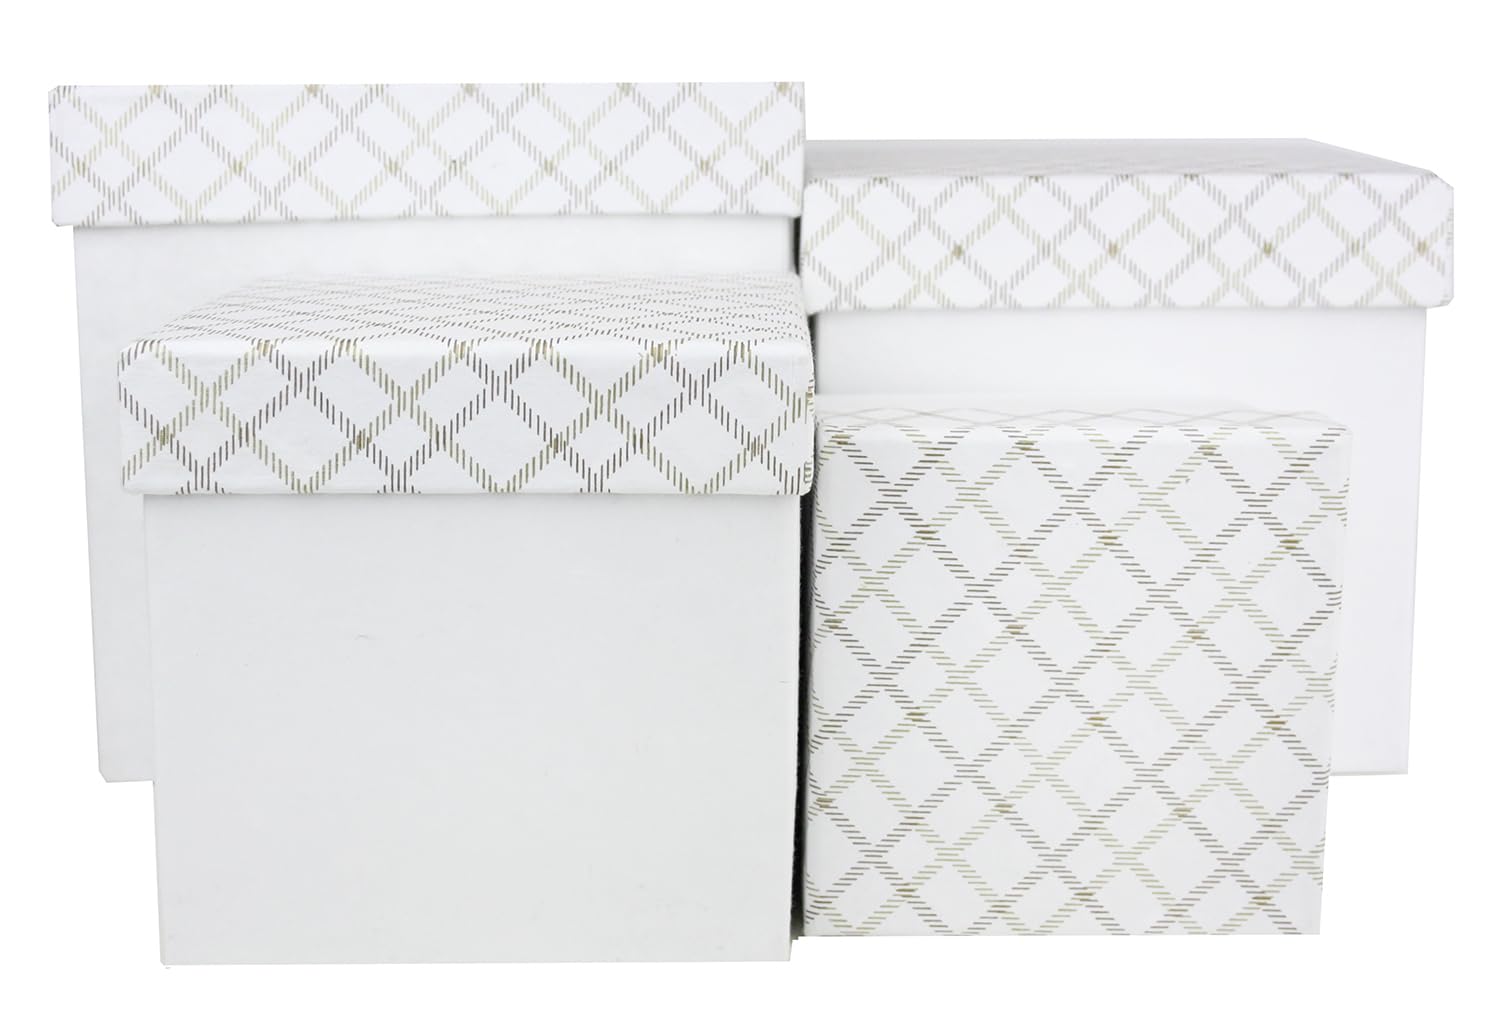 Emartbuy Geschenkboxen, quadratisch, handgefertigt, aus Baumwollpapier, kariert, Weiß, 4 Stück